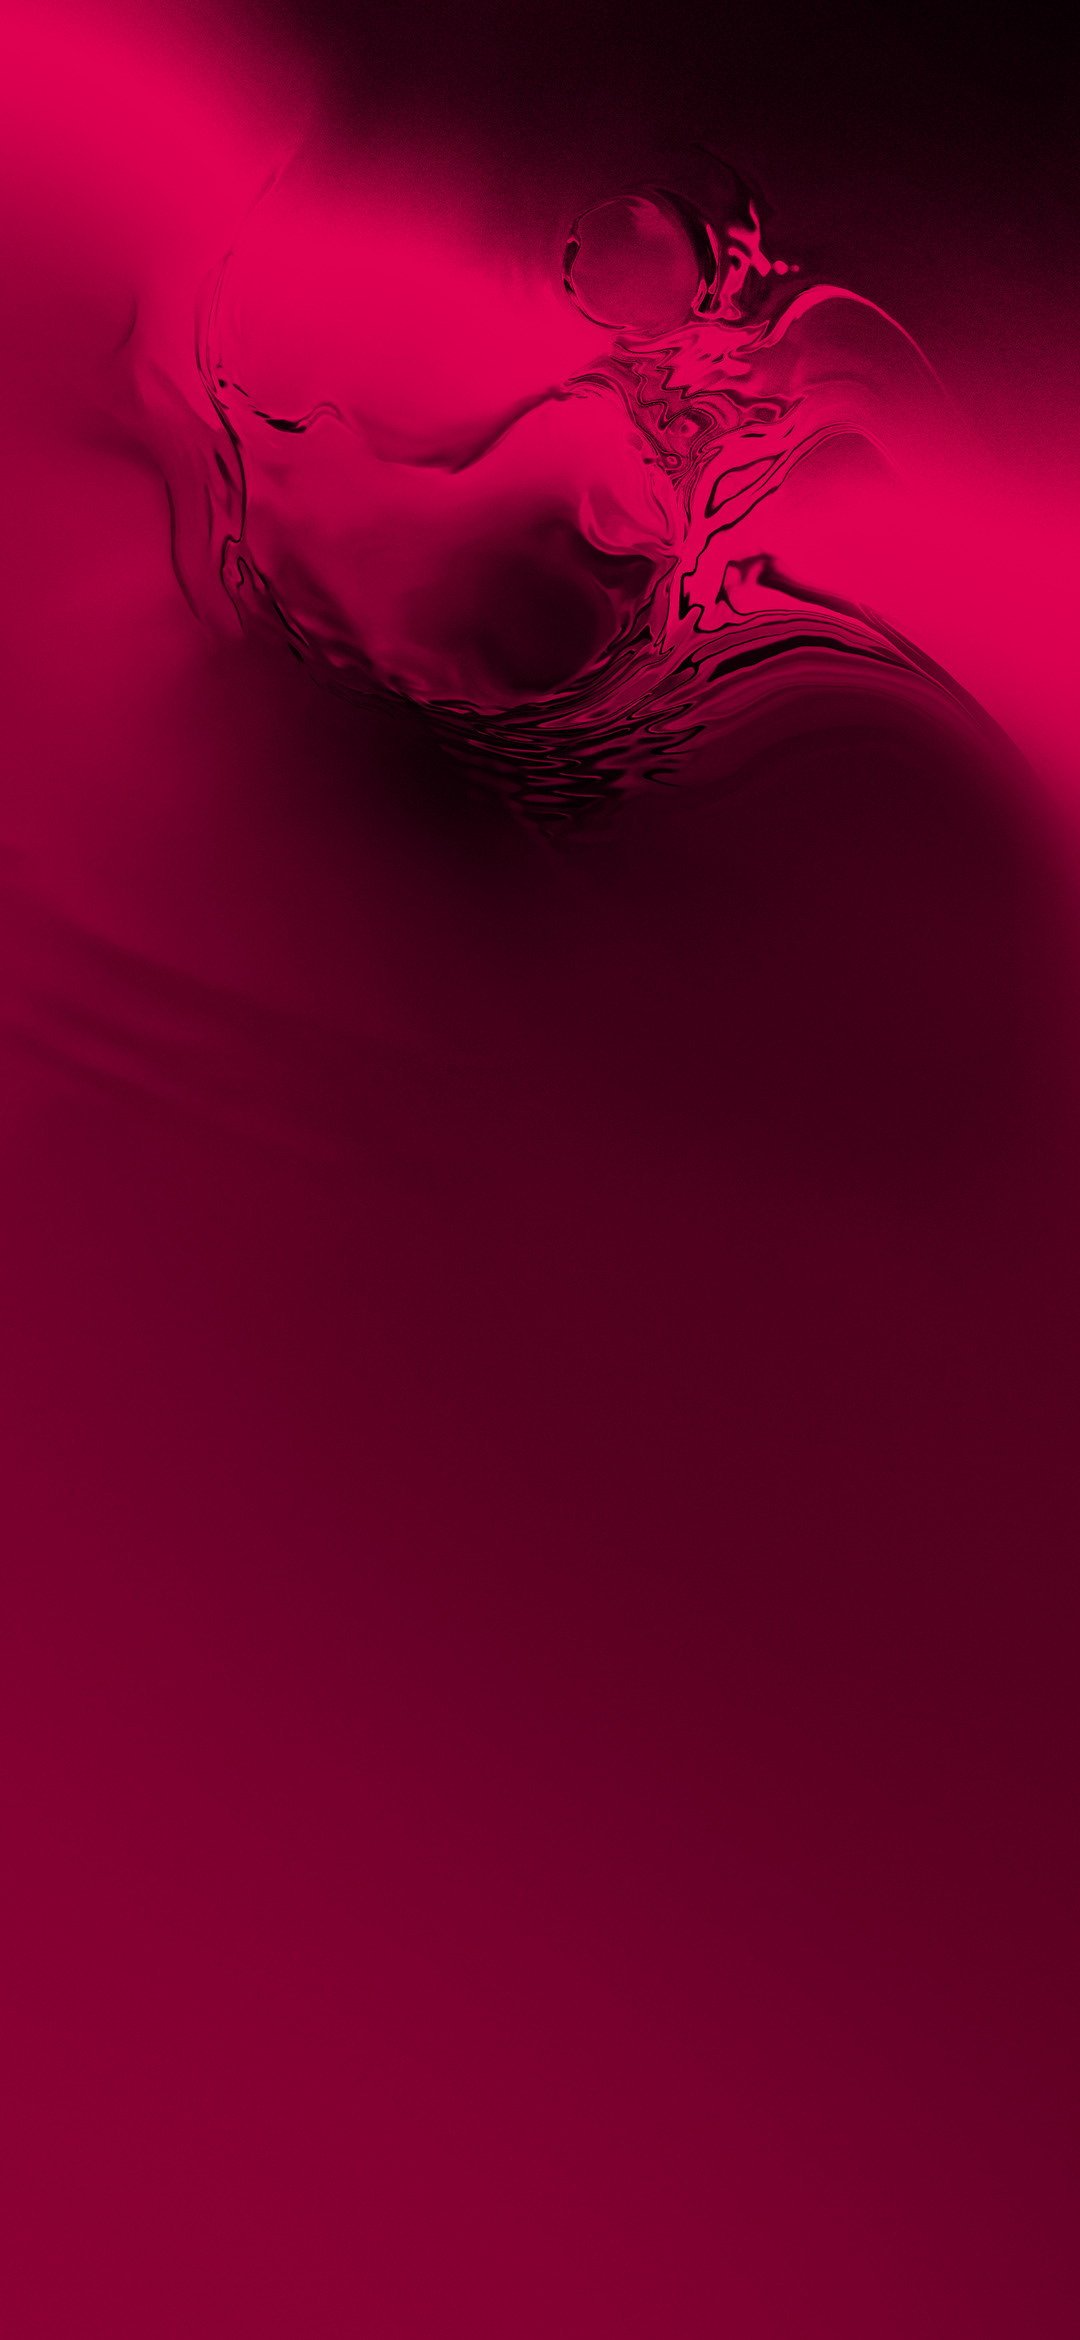 Tựa như những cơn sóng Liquid đang đập phá, những màu sắc tím, hồng, tím than và đỏ trong hình nền này còn chưa đủ để thể hiện sự mạnh mẽ và liều lĩnh của bạn. Hãy để hình nền này thể hiện cá tính của bạn trên chiếc điện thoại với những màu sắc đậm nét và tươi sáng.